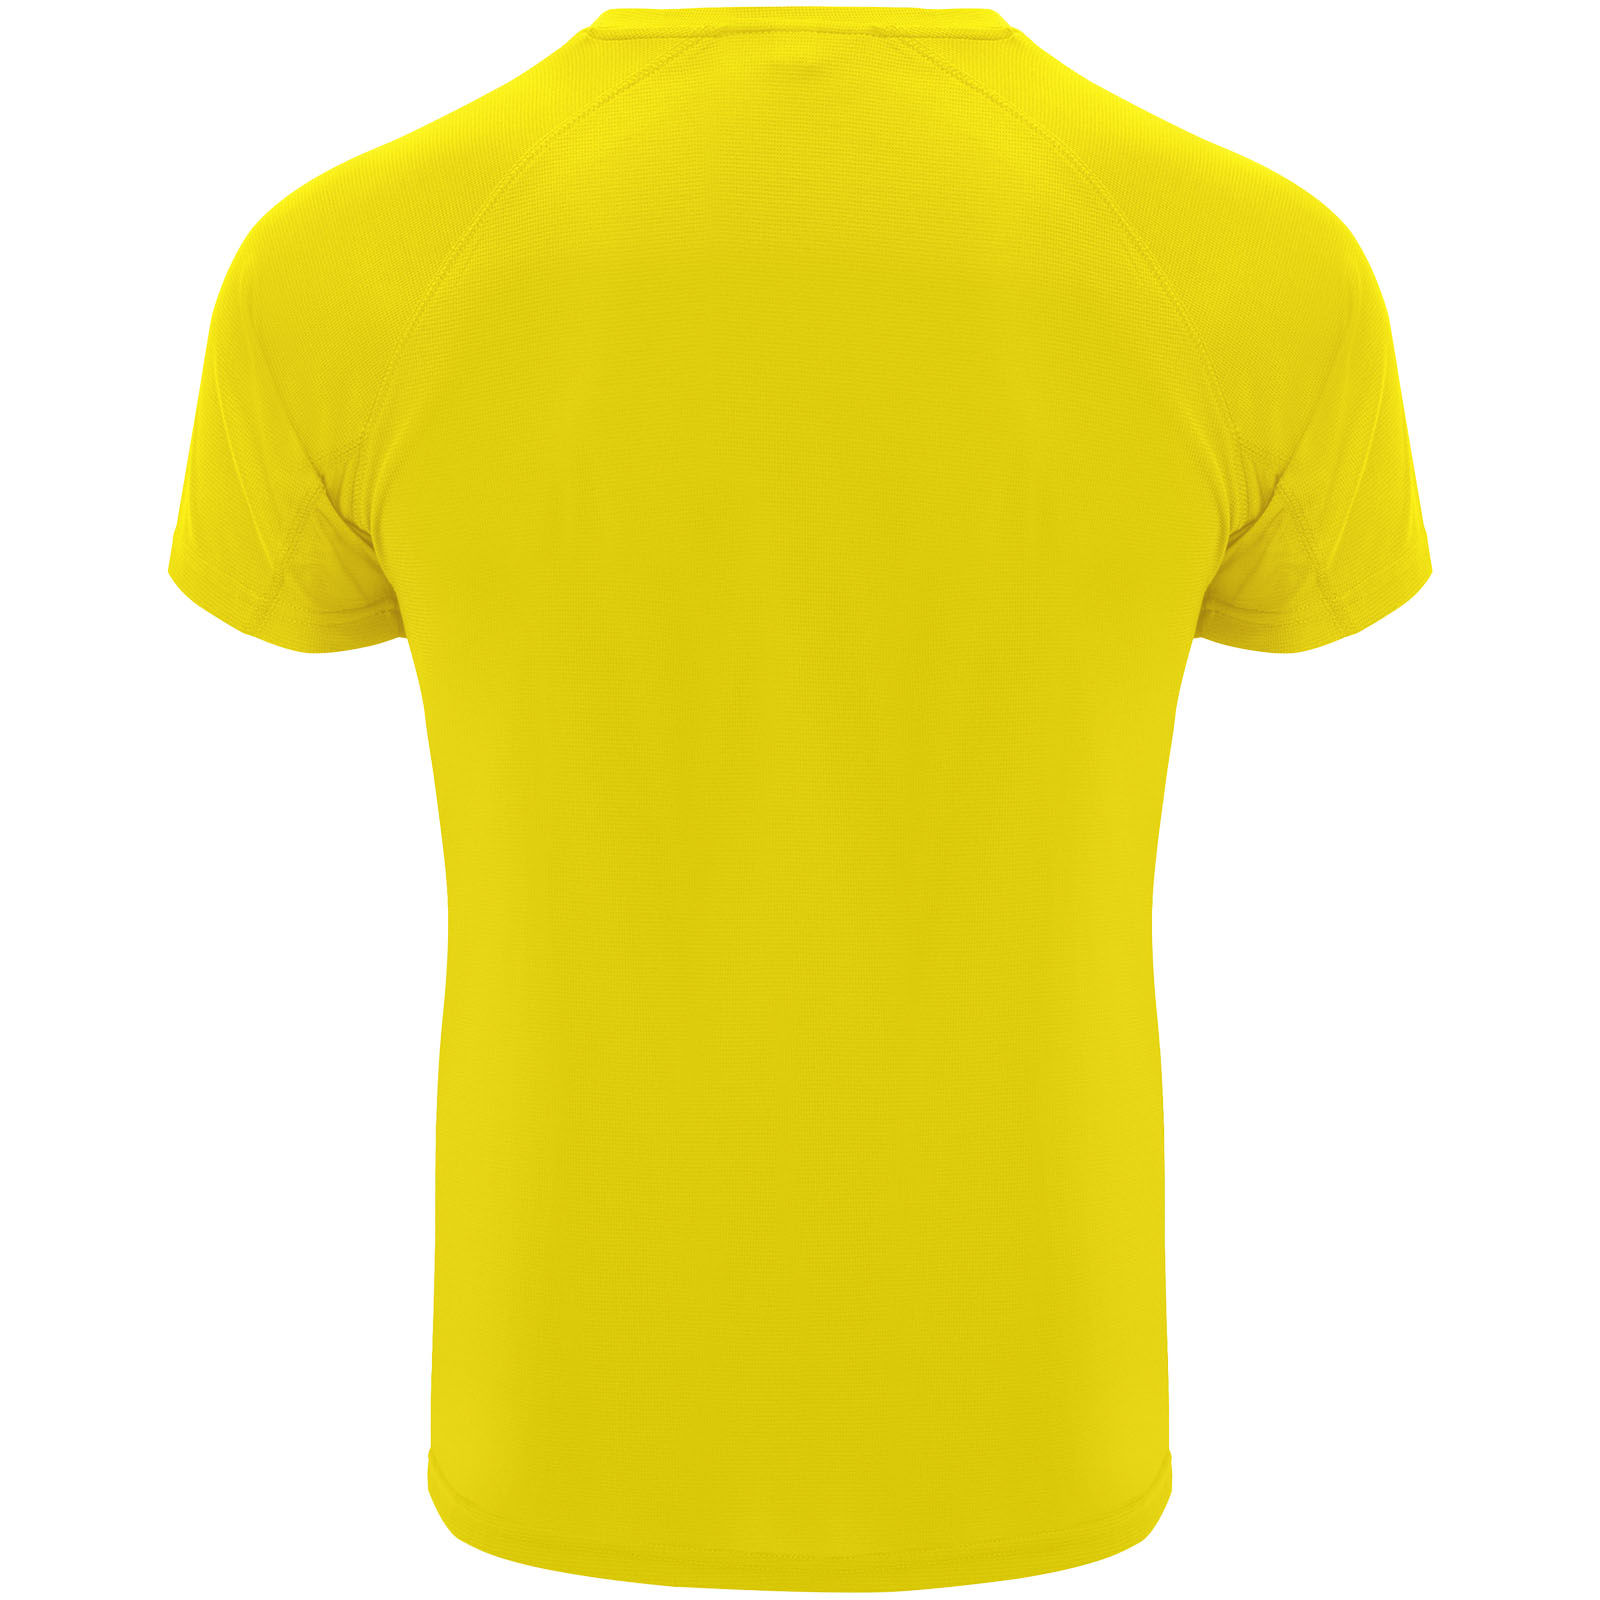 Advertising T-shirts - Bahrain short sleeve kids sports t-shirt - 1